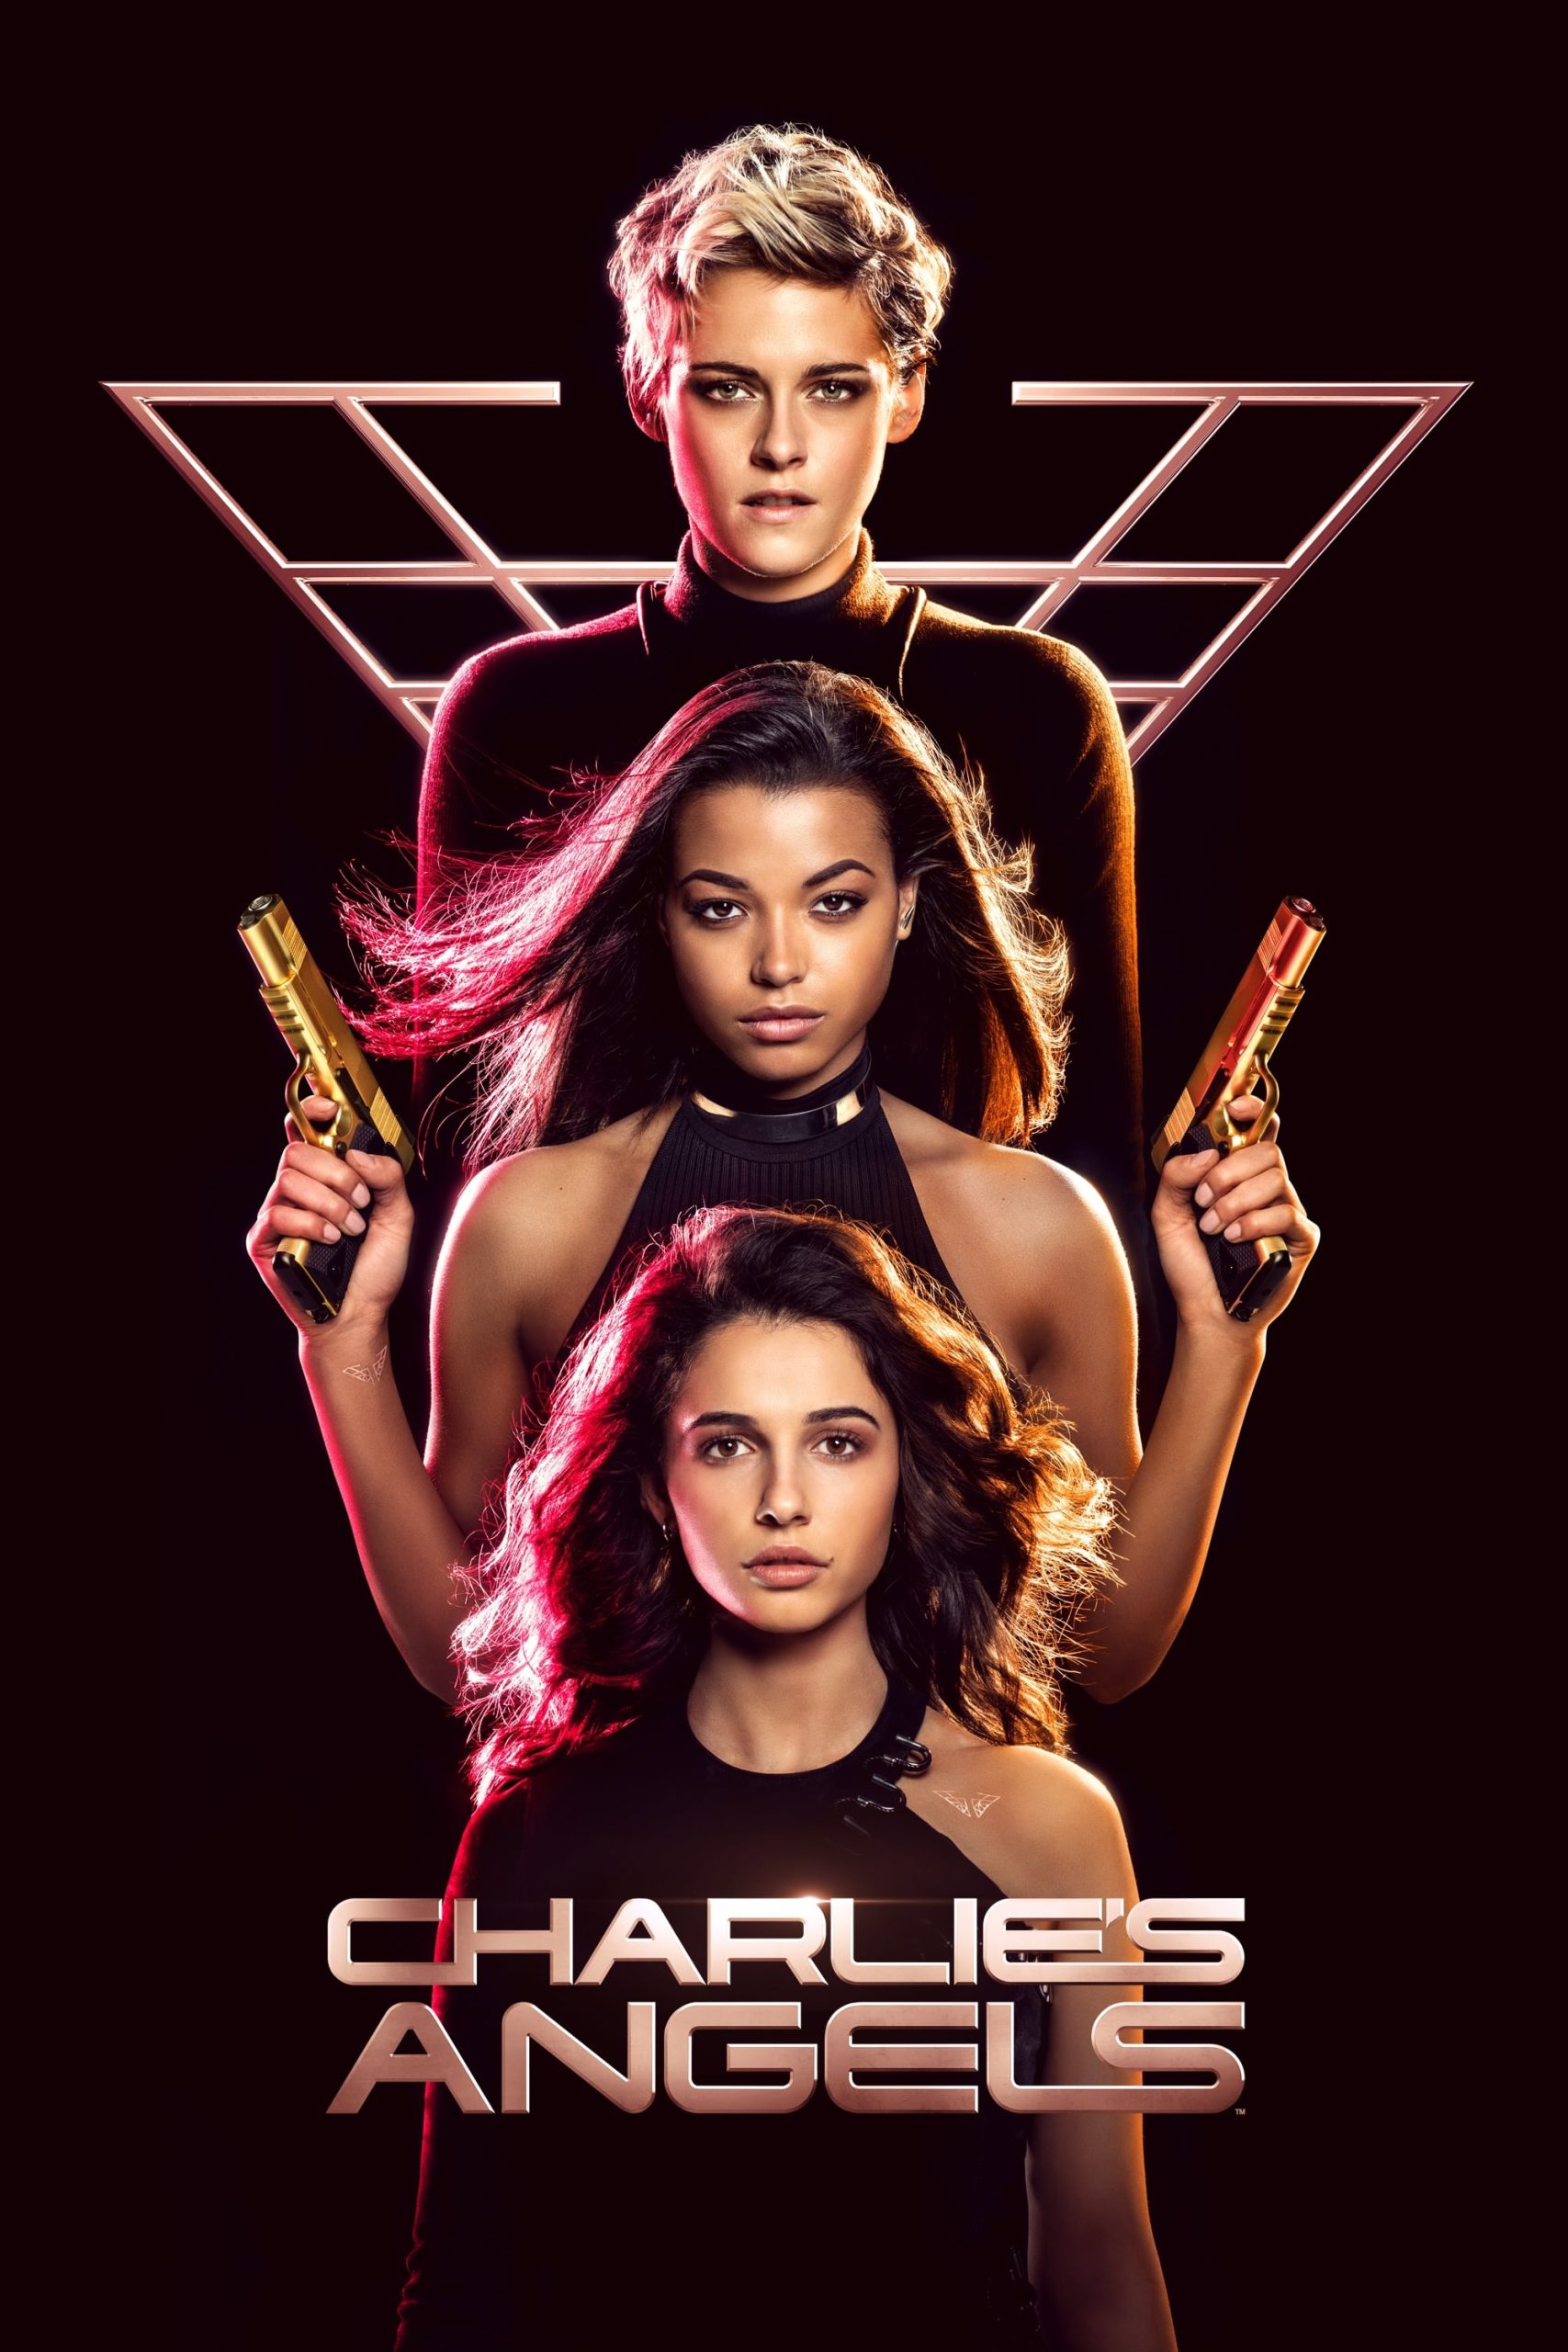 ดูหนังออนไลน์ฟรี Charlie’s Angels 3 นางฟ้าชาร์ลี